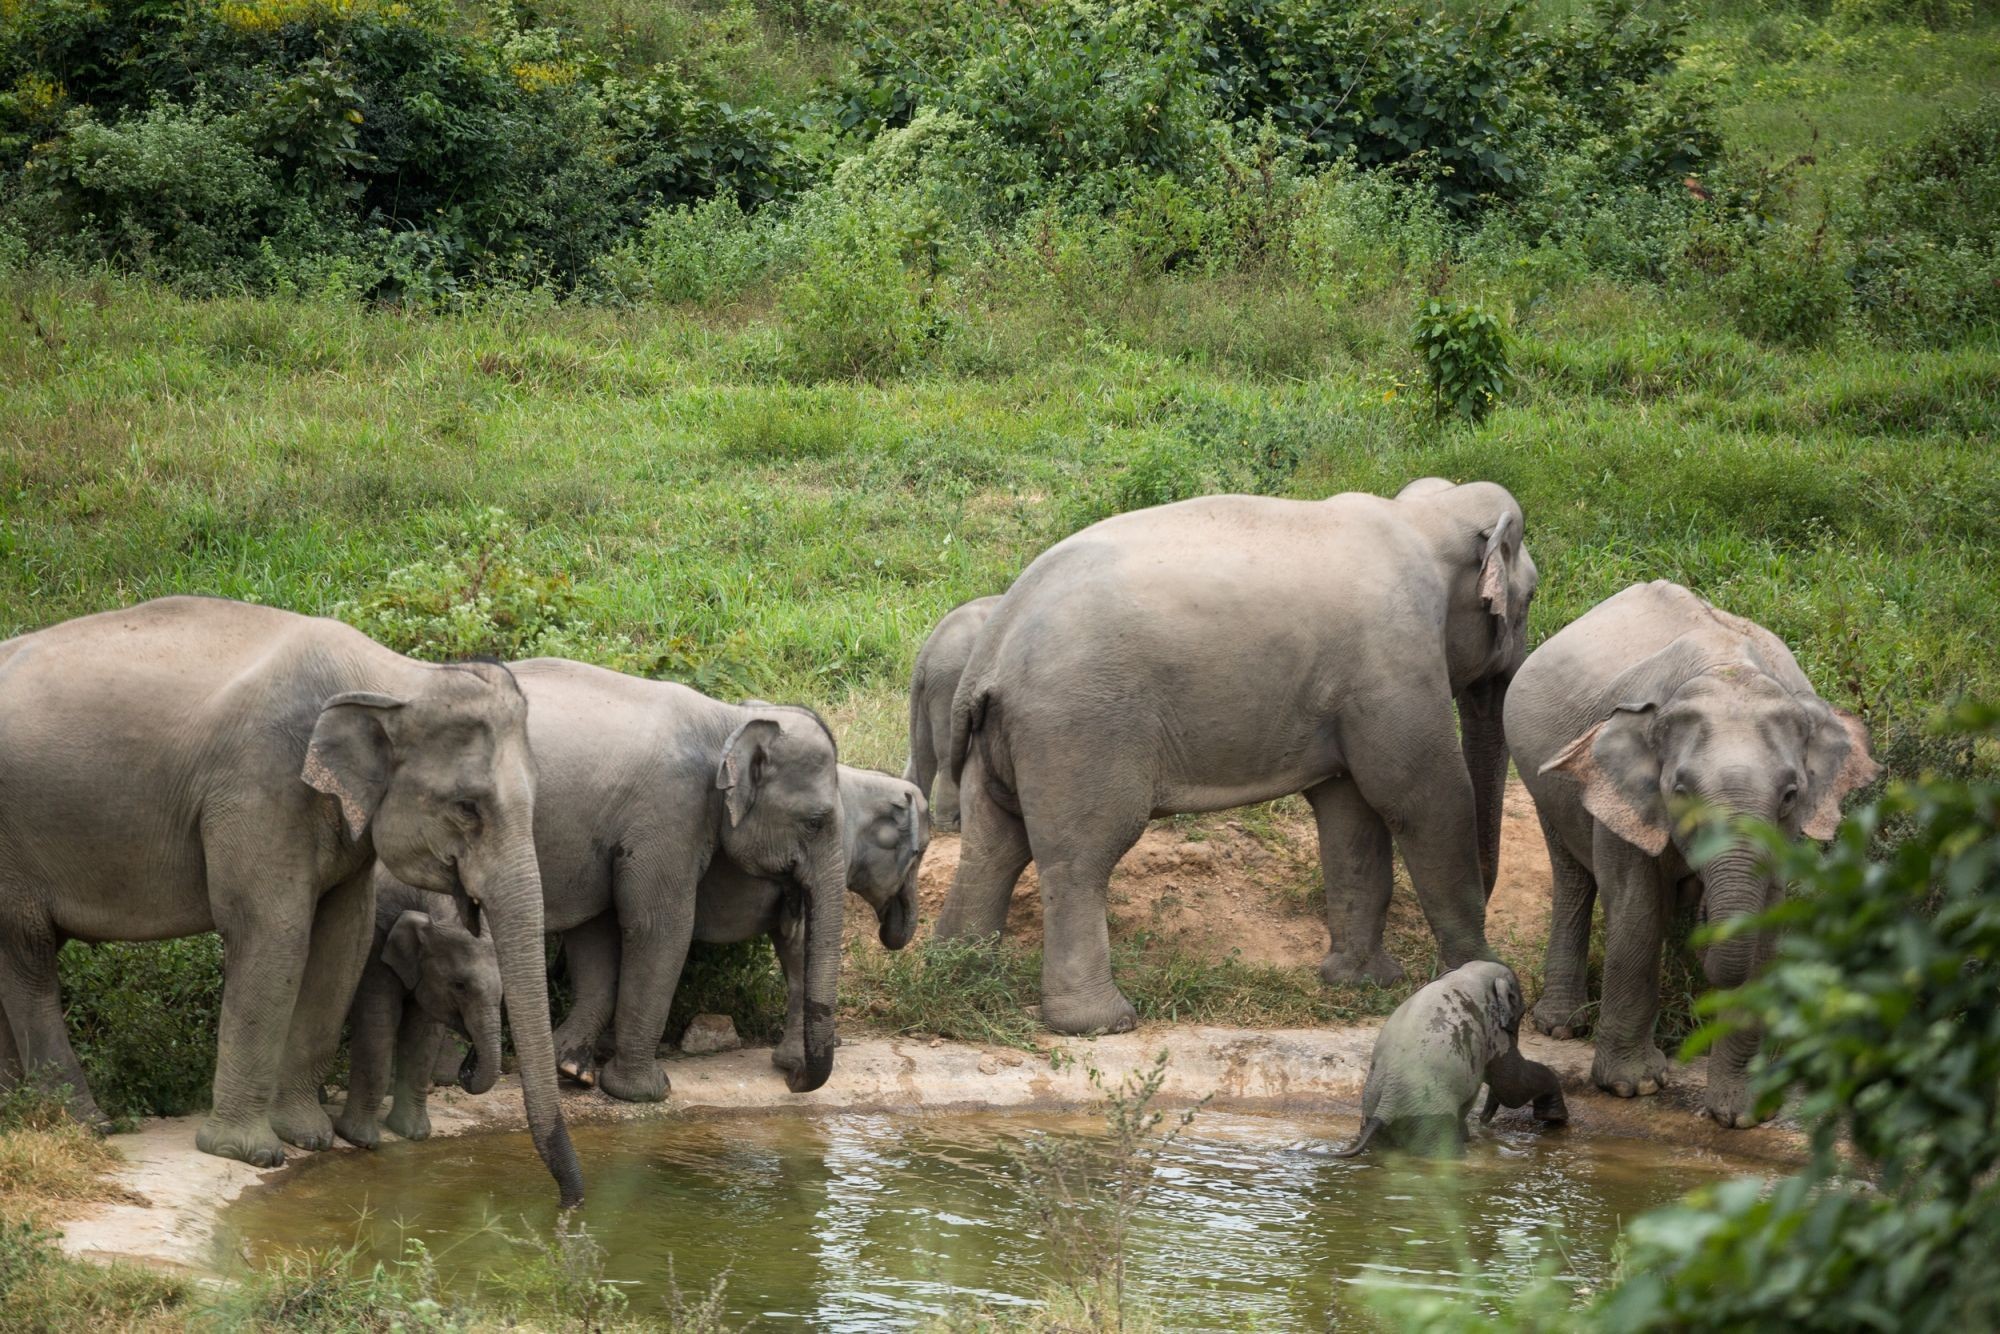 Elephants at Kui Buri National Park - World Animal Protection - Wildlife not entertainers